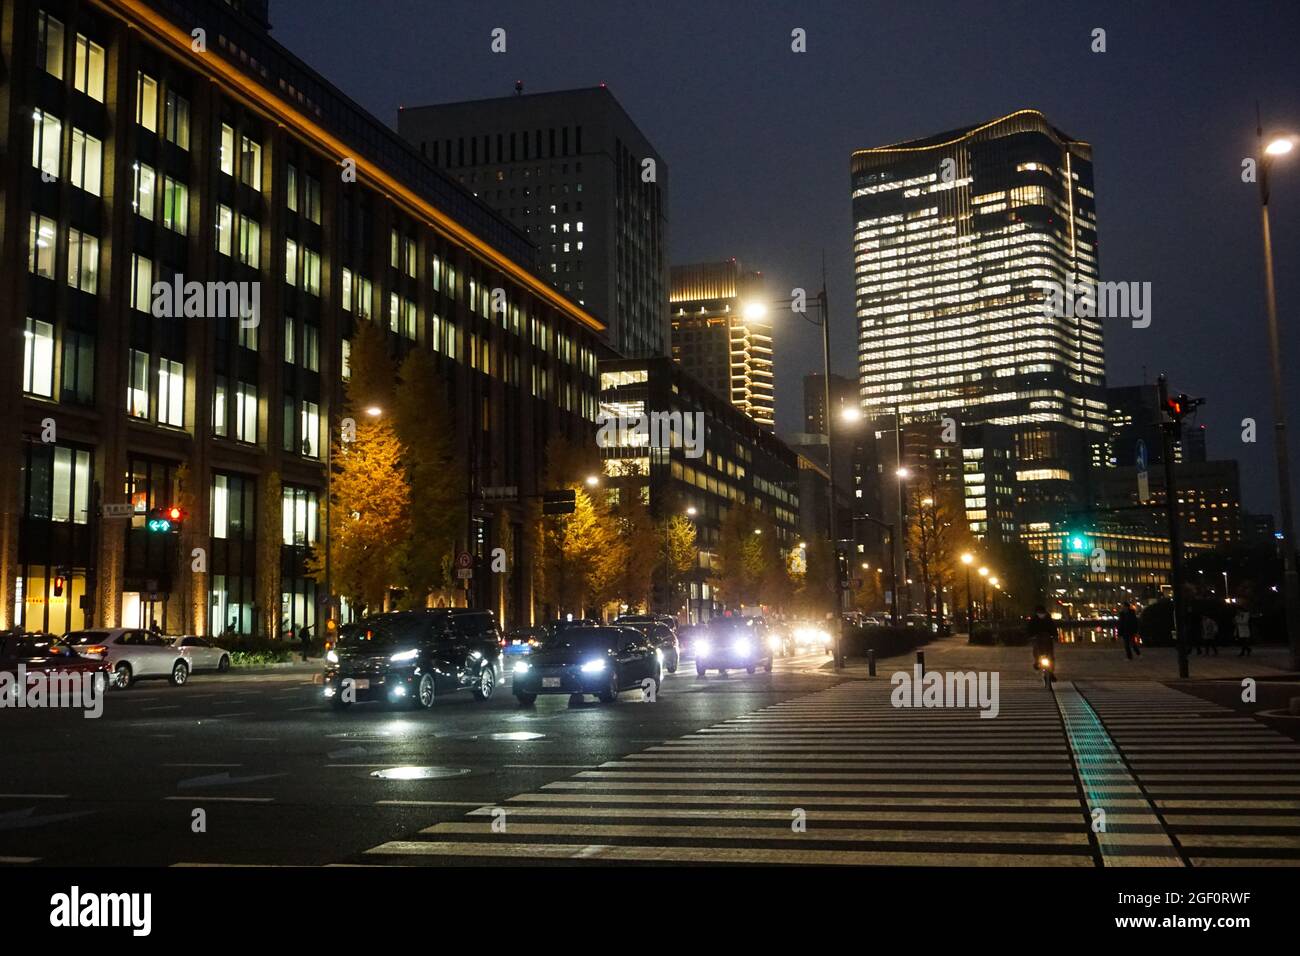 Tokyo Crossing Wolkenkratzer Marunouchi Japan Stock Foto Stock Bilder Stock Bilder Stockfoto